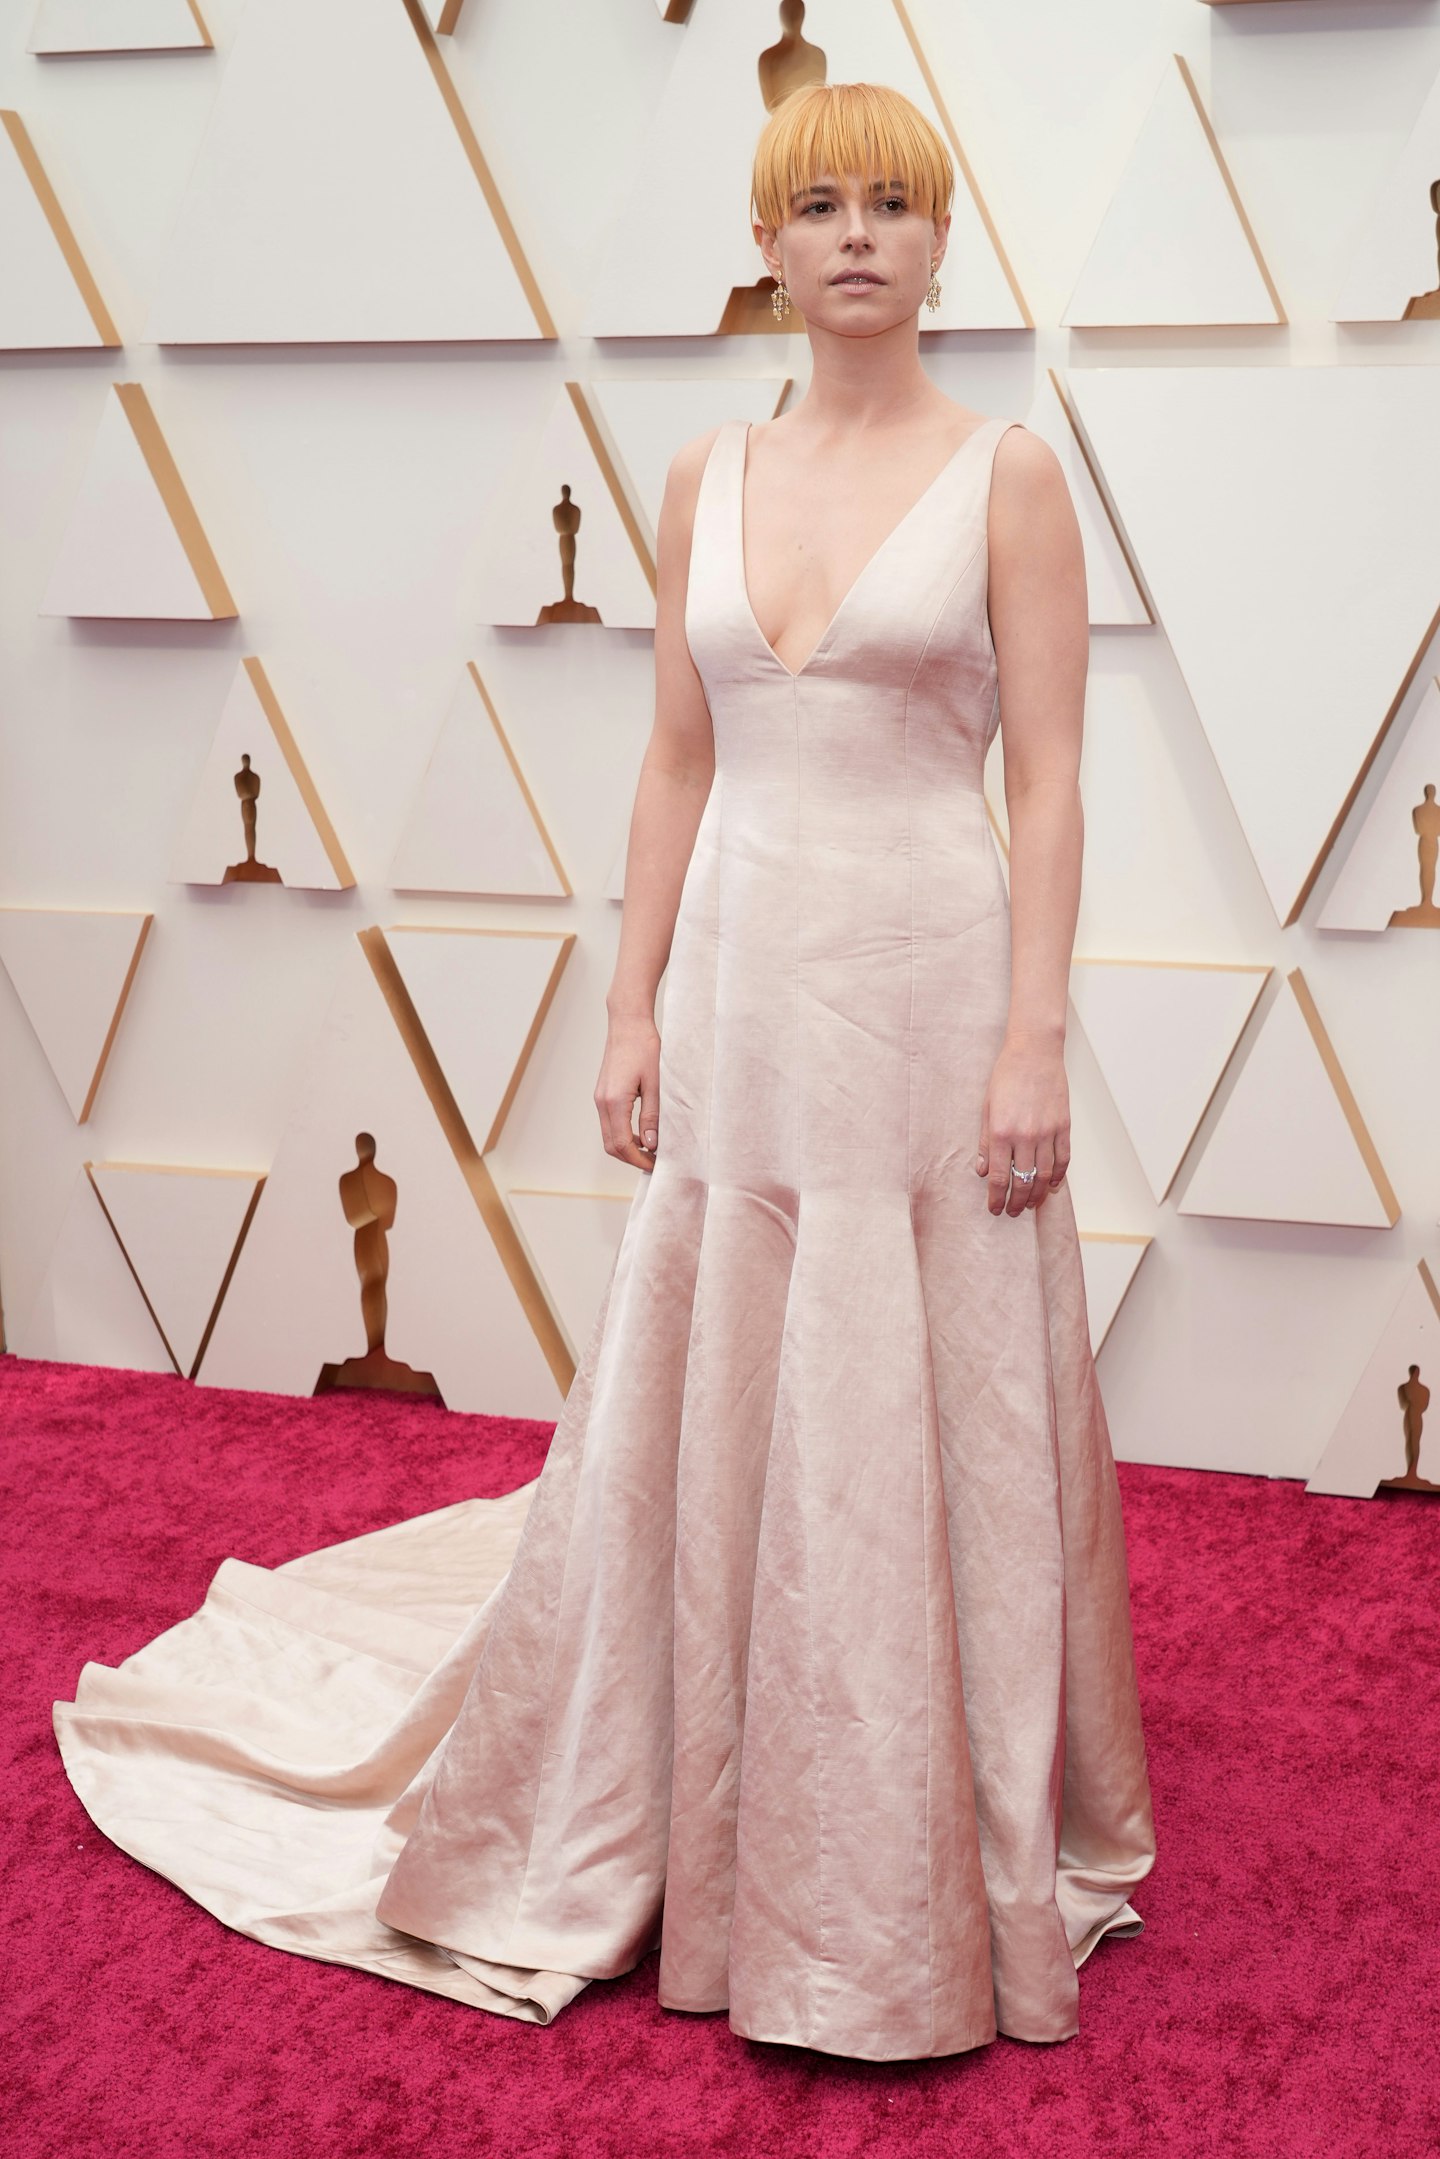 Timothée Chalamet in Louis Vuitton at 2022 Oscars: Details, Photos